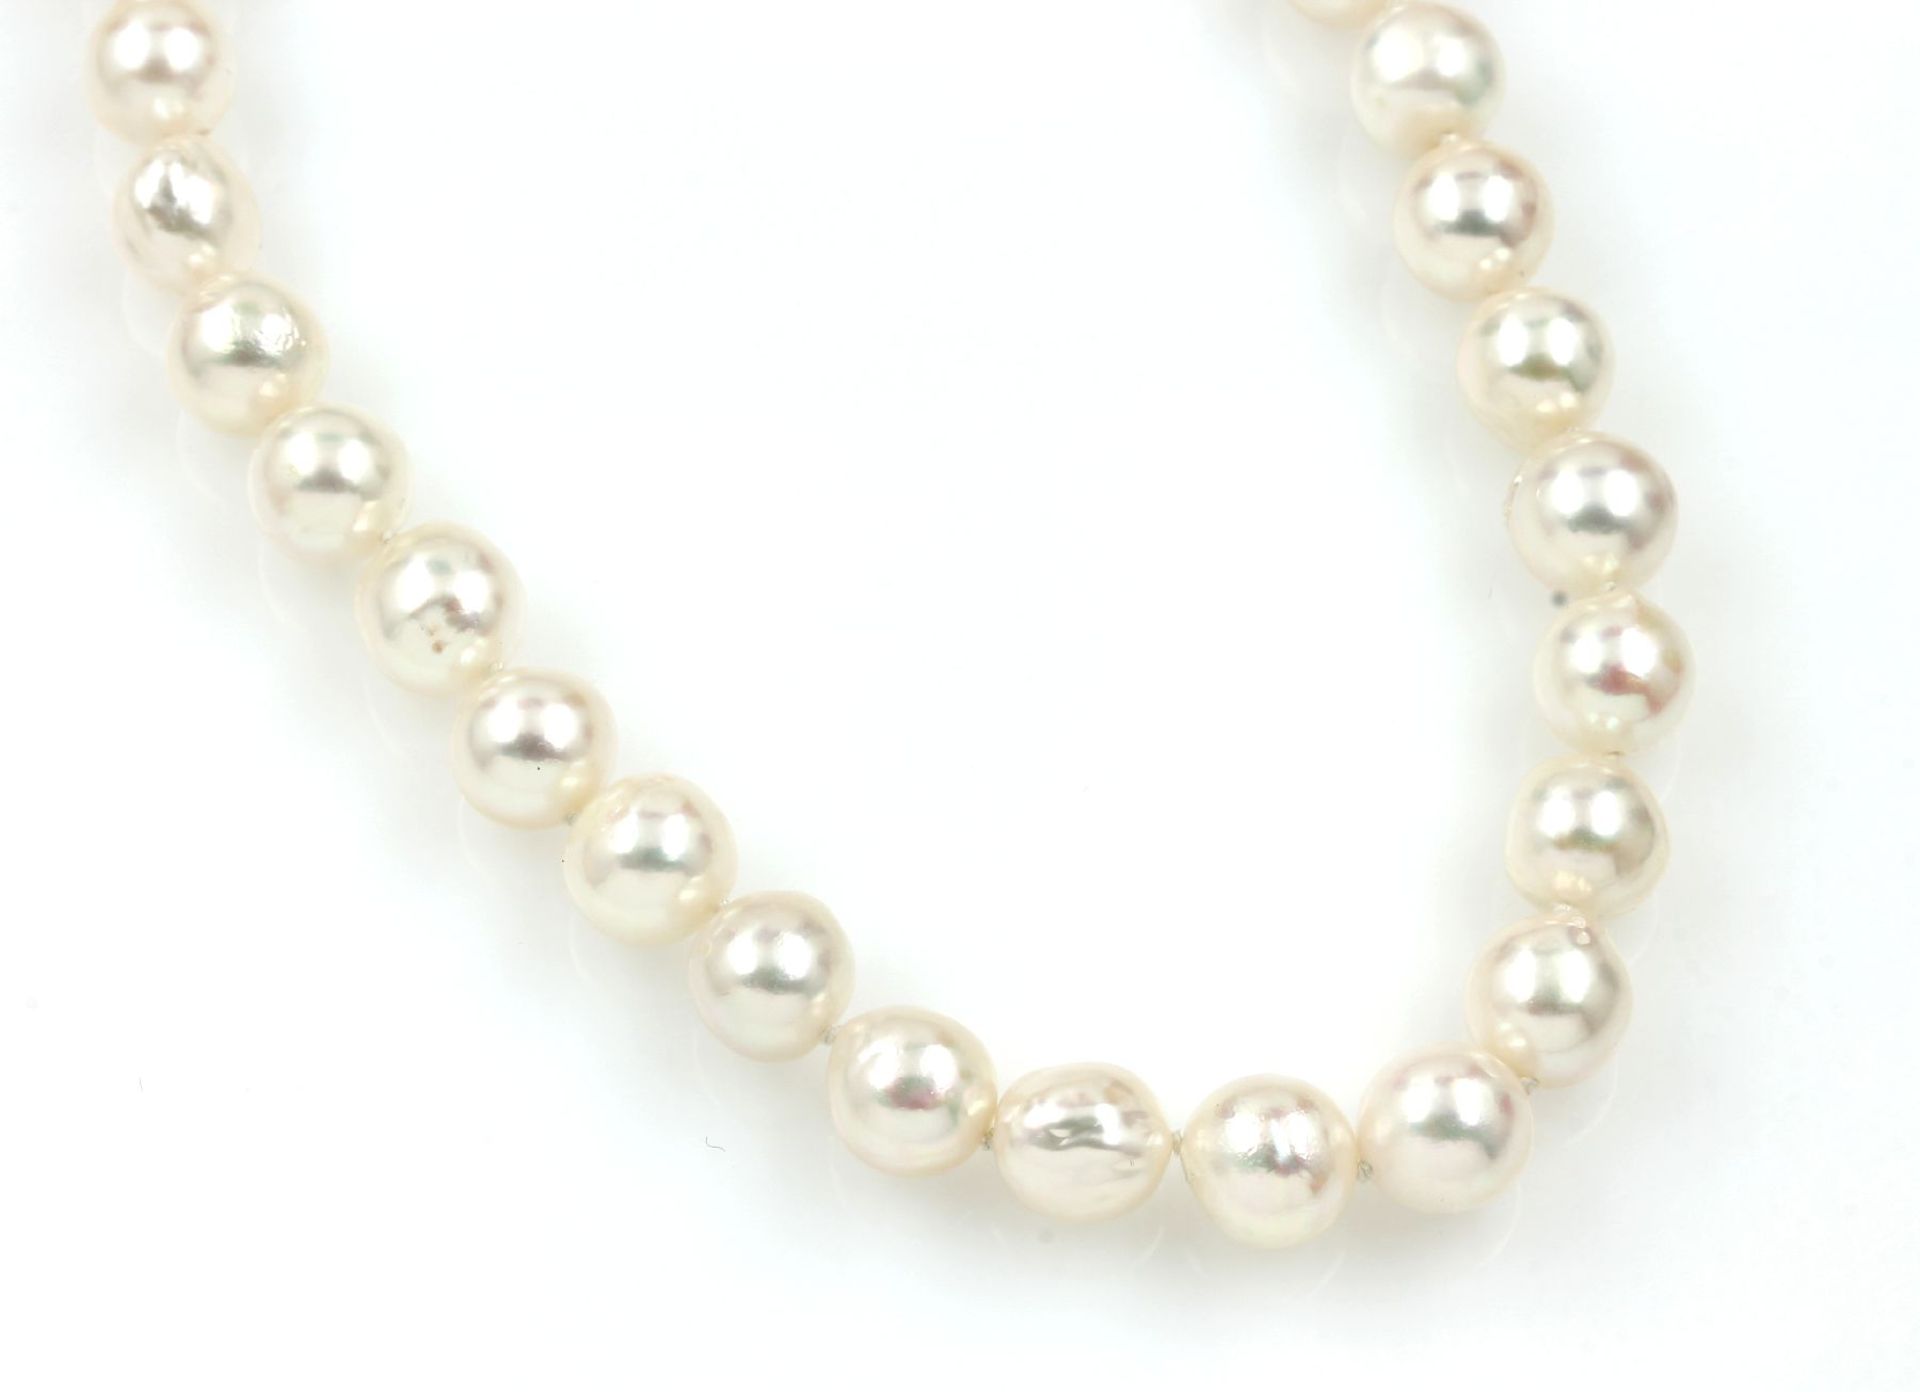 Collier aus Akoyazuchtperlen, Schließe in Perle eingearbeitet, barocke Perlen D ca. 8.5 - 9 mm, nat.